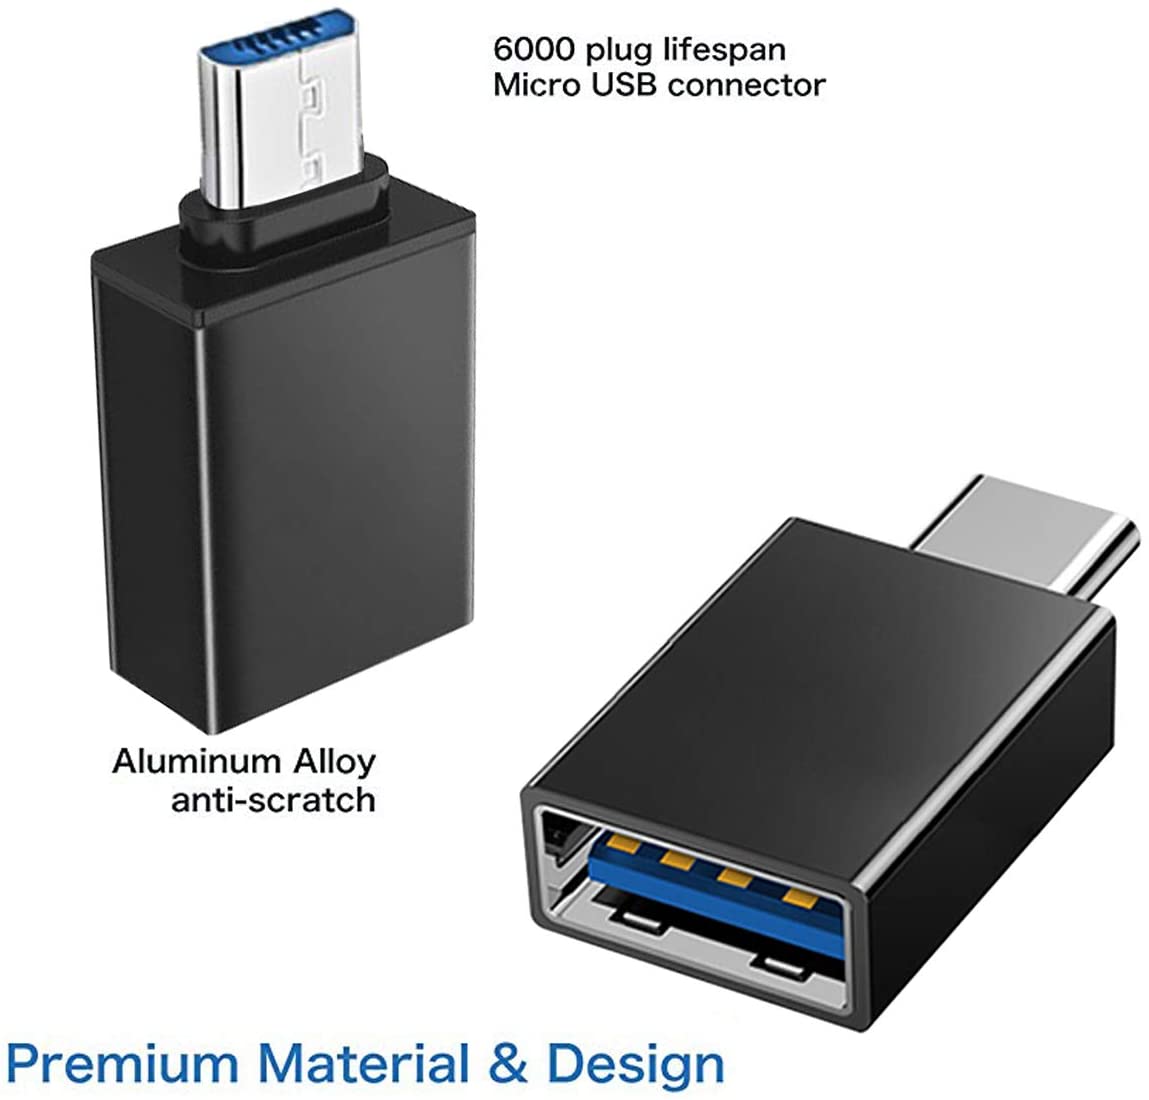 Bộ chuyển đổi Micro USB OTG USB OTG cho điện thoại và máy tính bảng Android, Cắm và chạy Tương thích với Ổ đĩa flash USB, Máy ảnh, Chuột, Bàn phím